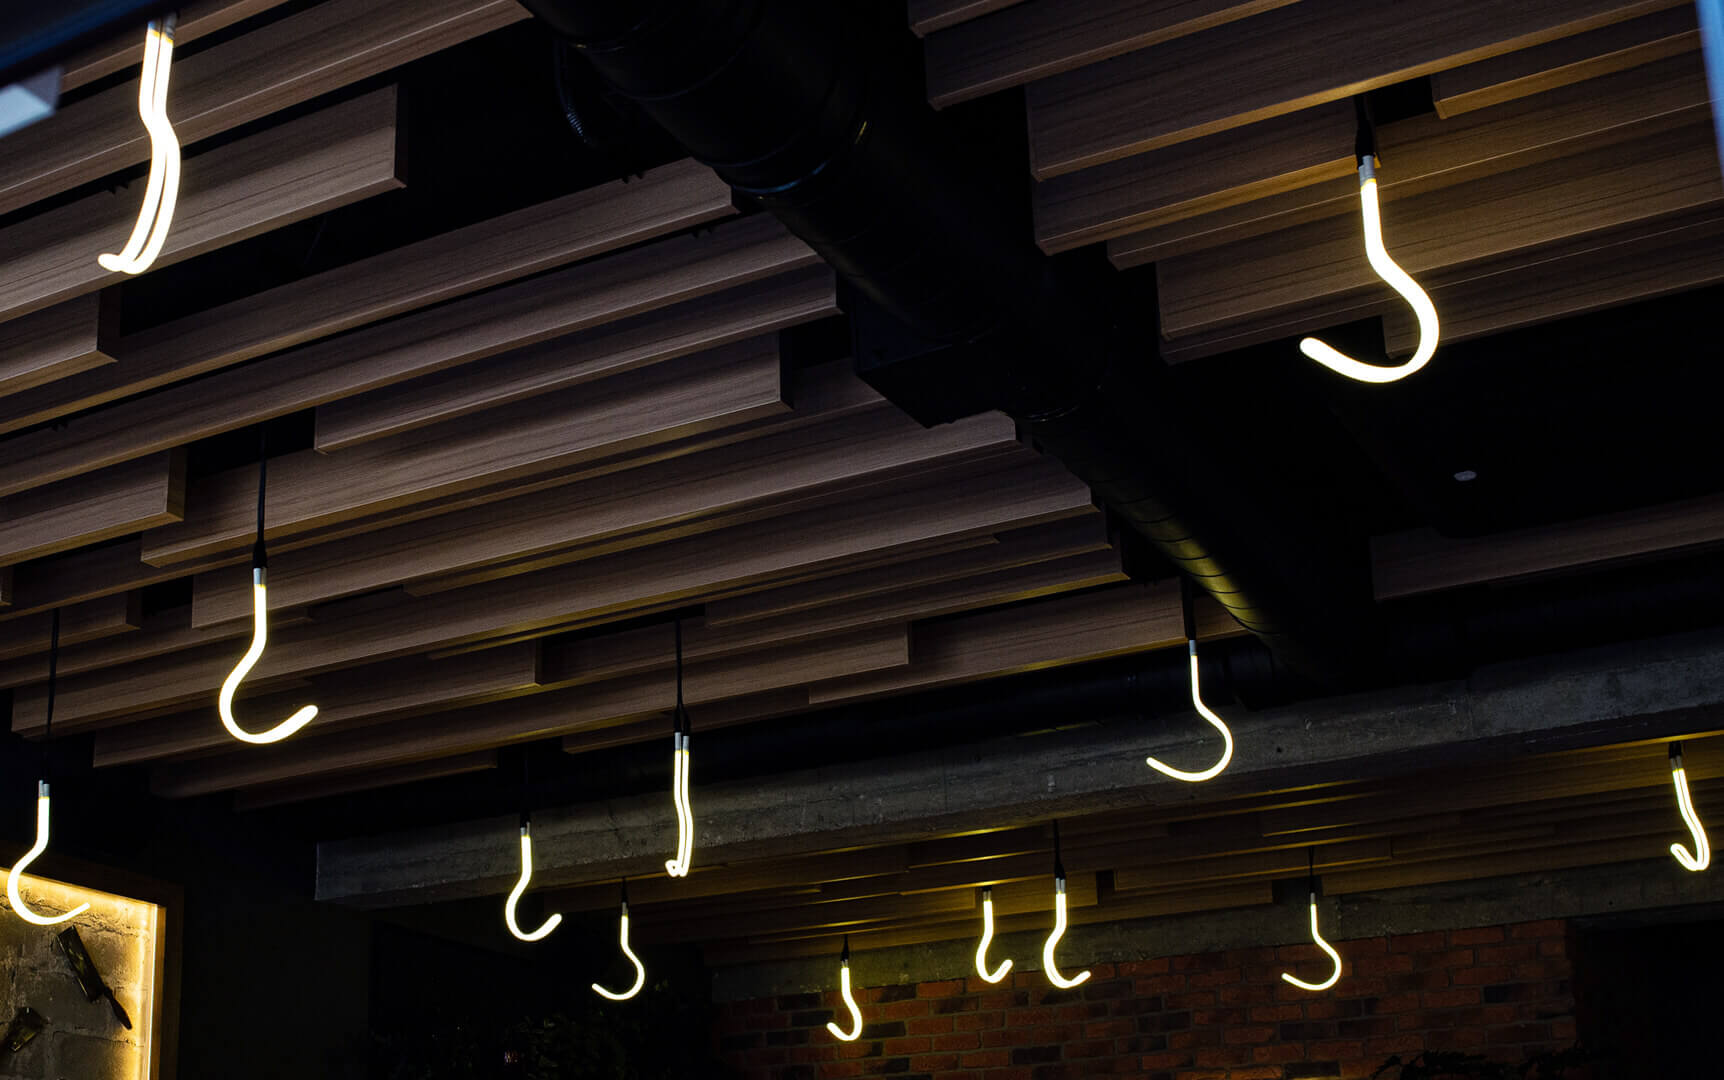 Neonhaken aan het plafond in het steakhouse.